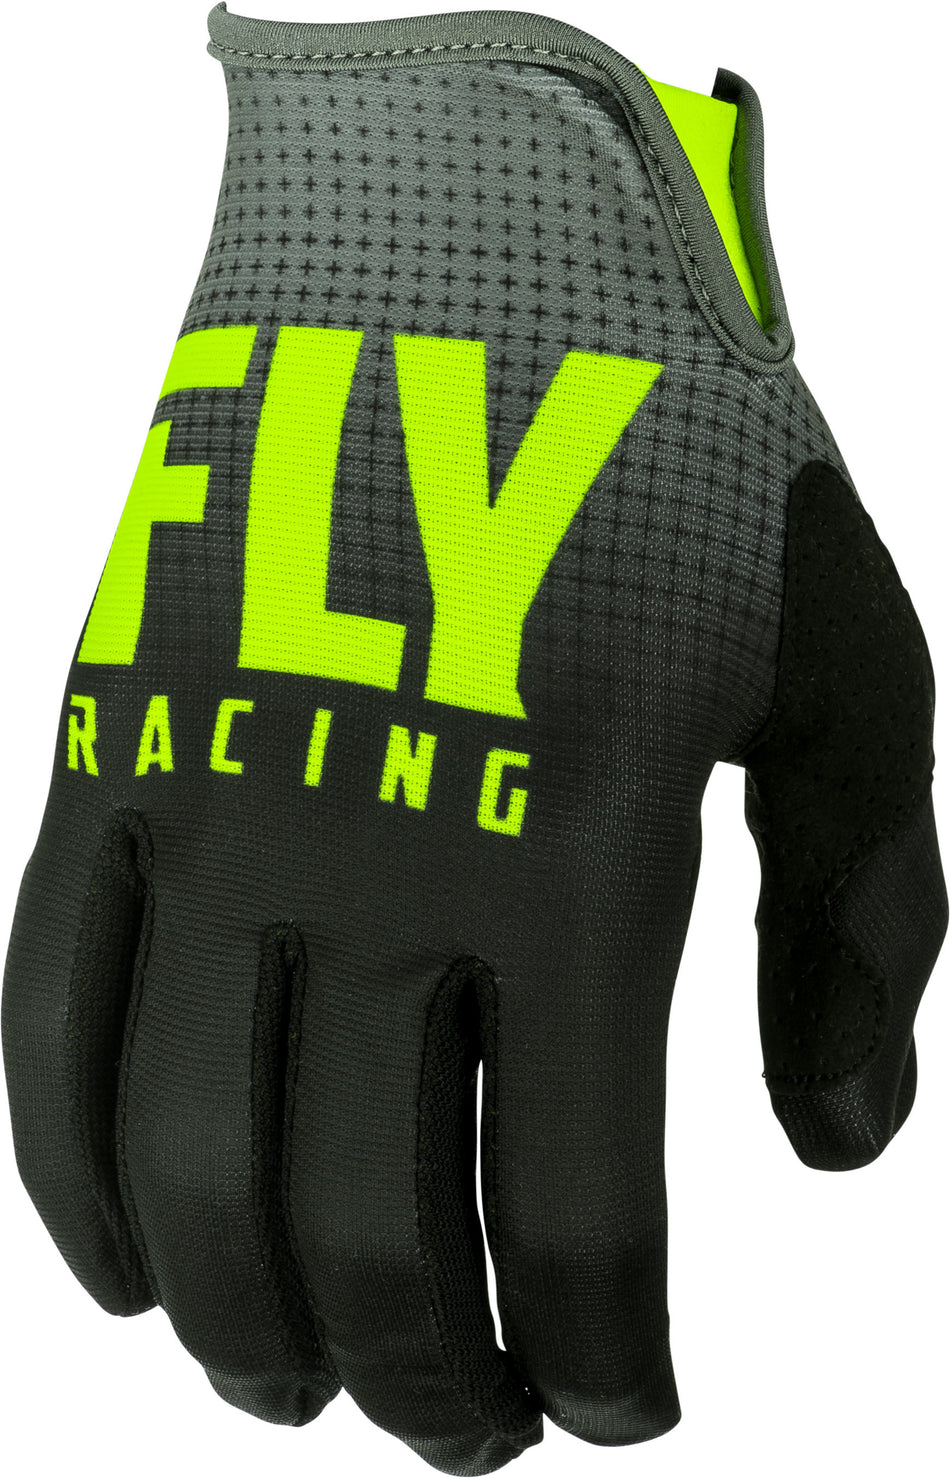 FLY RACING Lite Gloves Black/Hi-Vis Sz 08 372-01008